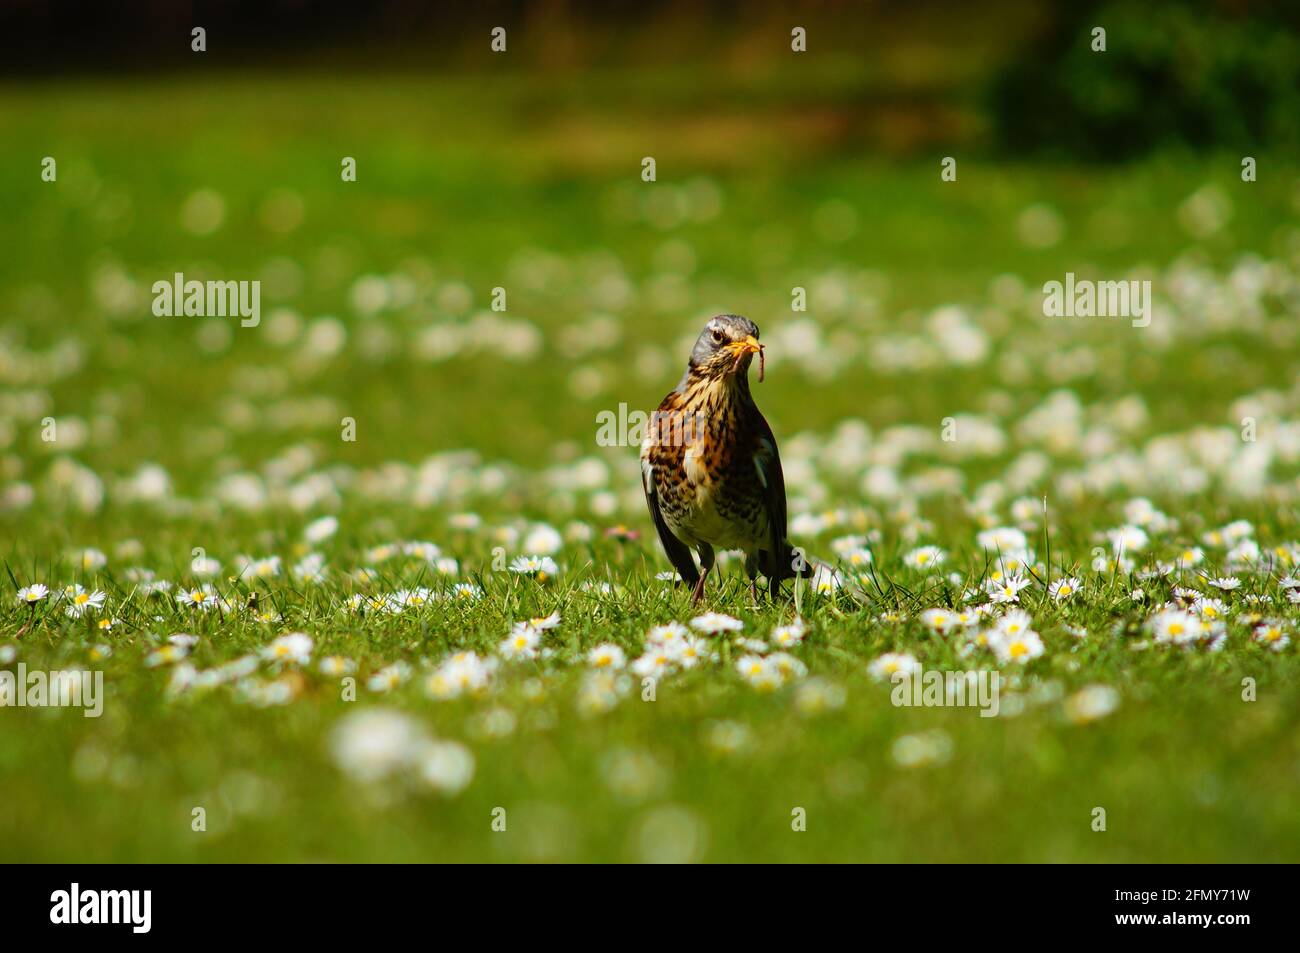 A fieldfare in a daisy meadow. Stock Photo